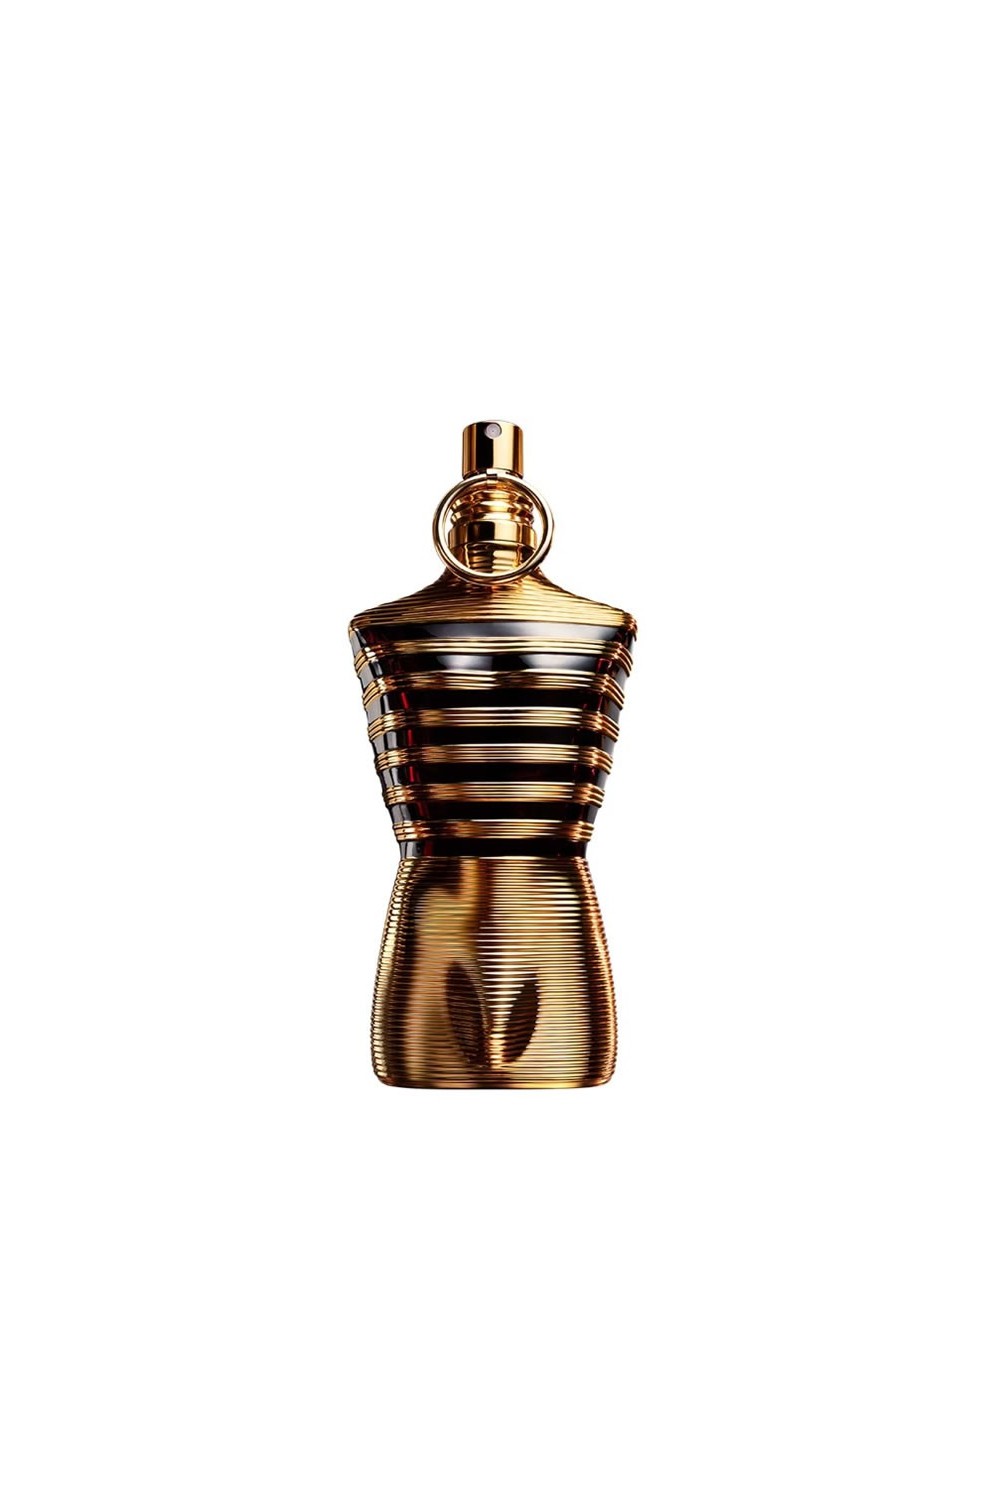 Jean Paul Gaultier Le Male Elixir Eau De Perfume Spray 75ml